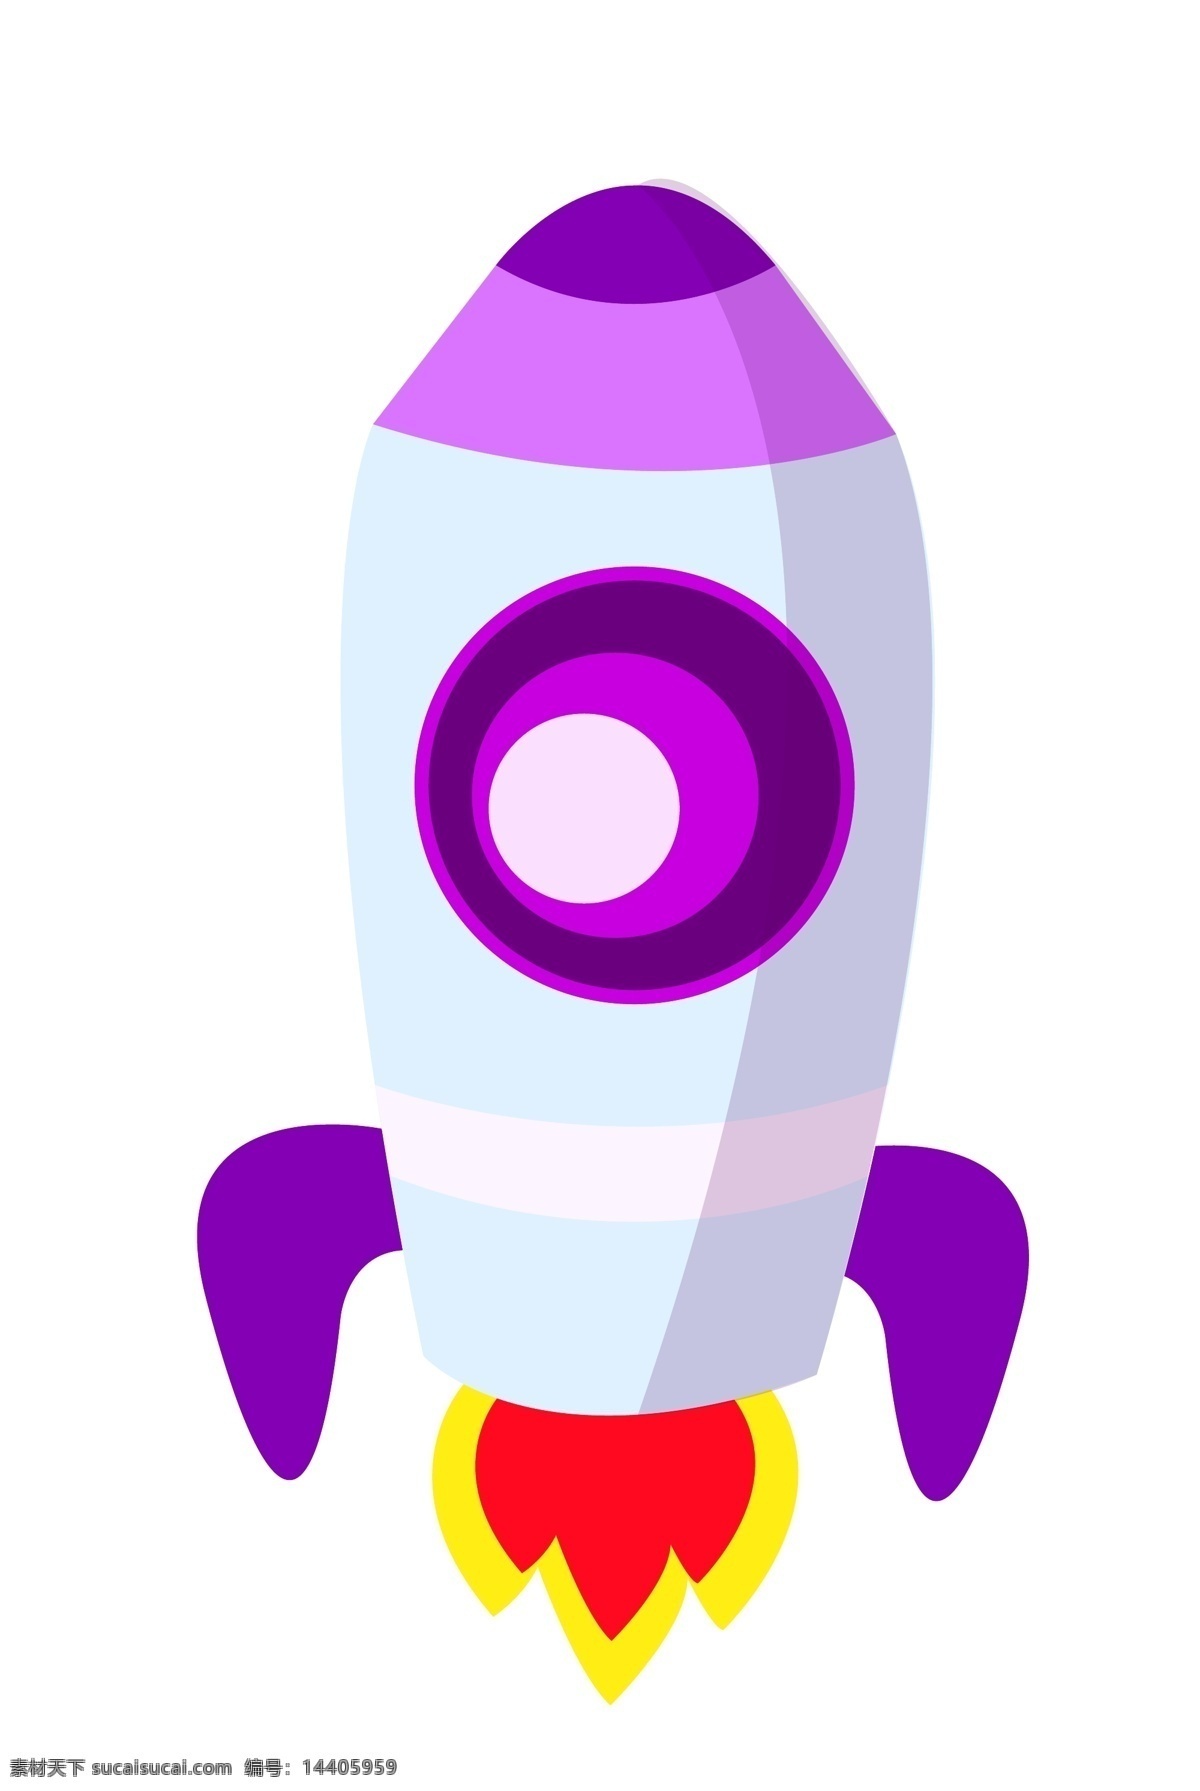 正在 发射 的卡 通 火箭 发射火箭 一架火箭 航天他侧技术 高科技 紫色 红色 卡通火箭